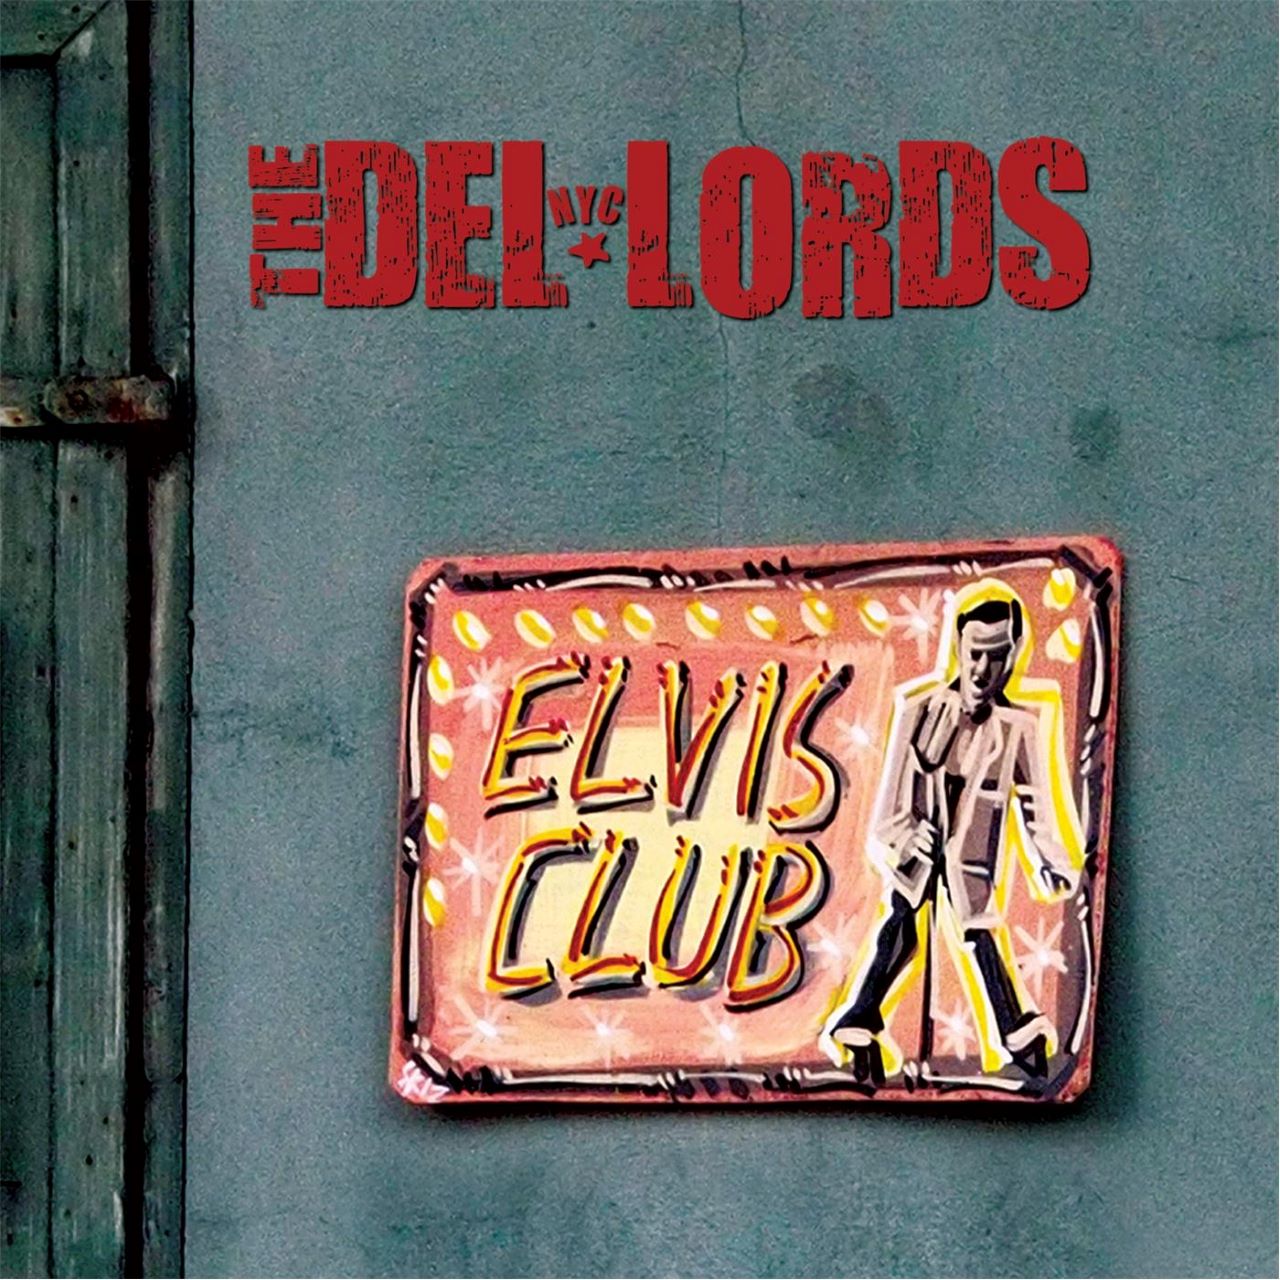 Del Lords - Elvis Club cover album